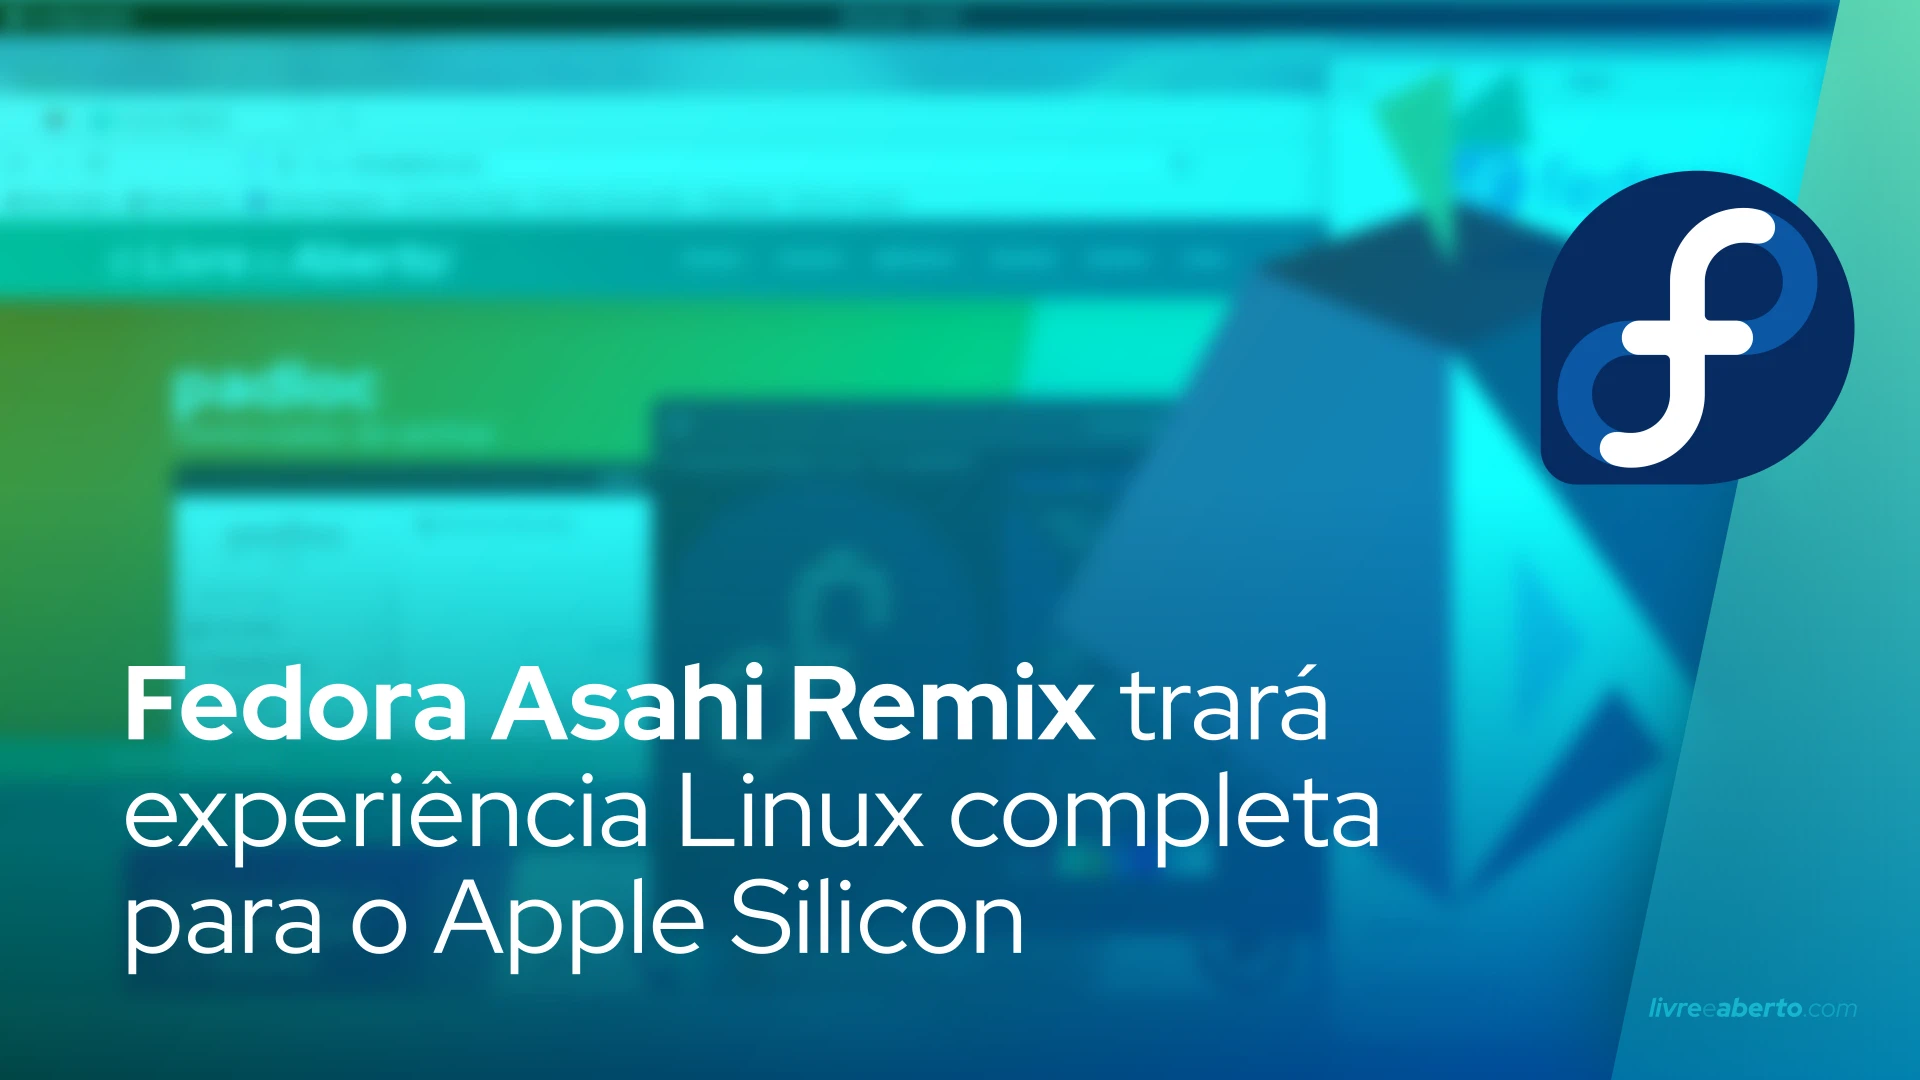 Fedora Asahi Remix trará experiência Linux completa para o Apple Silicon